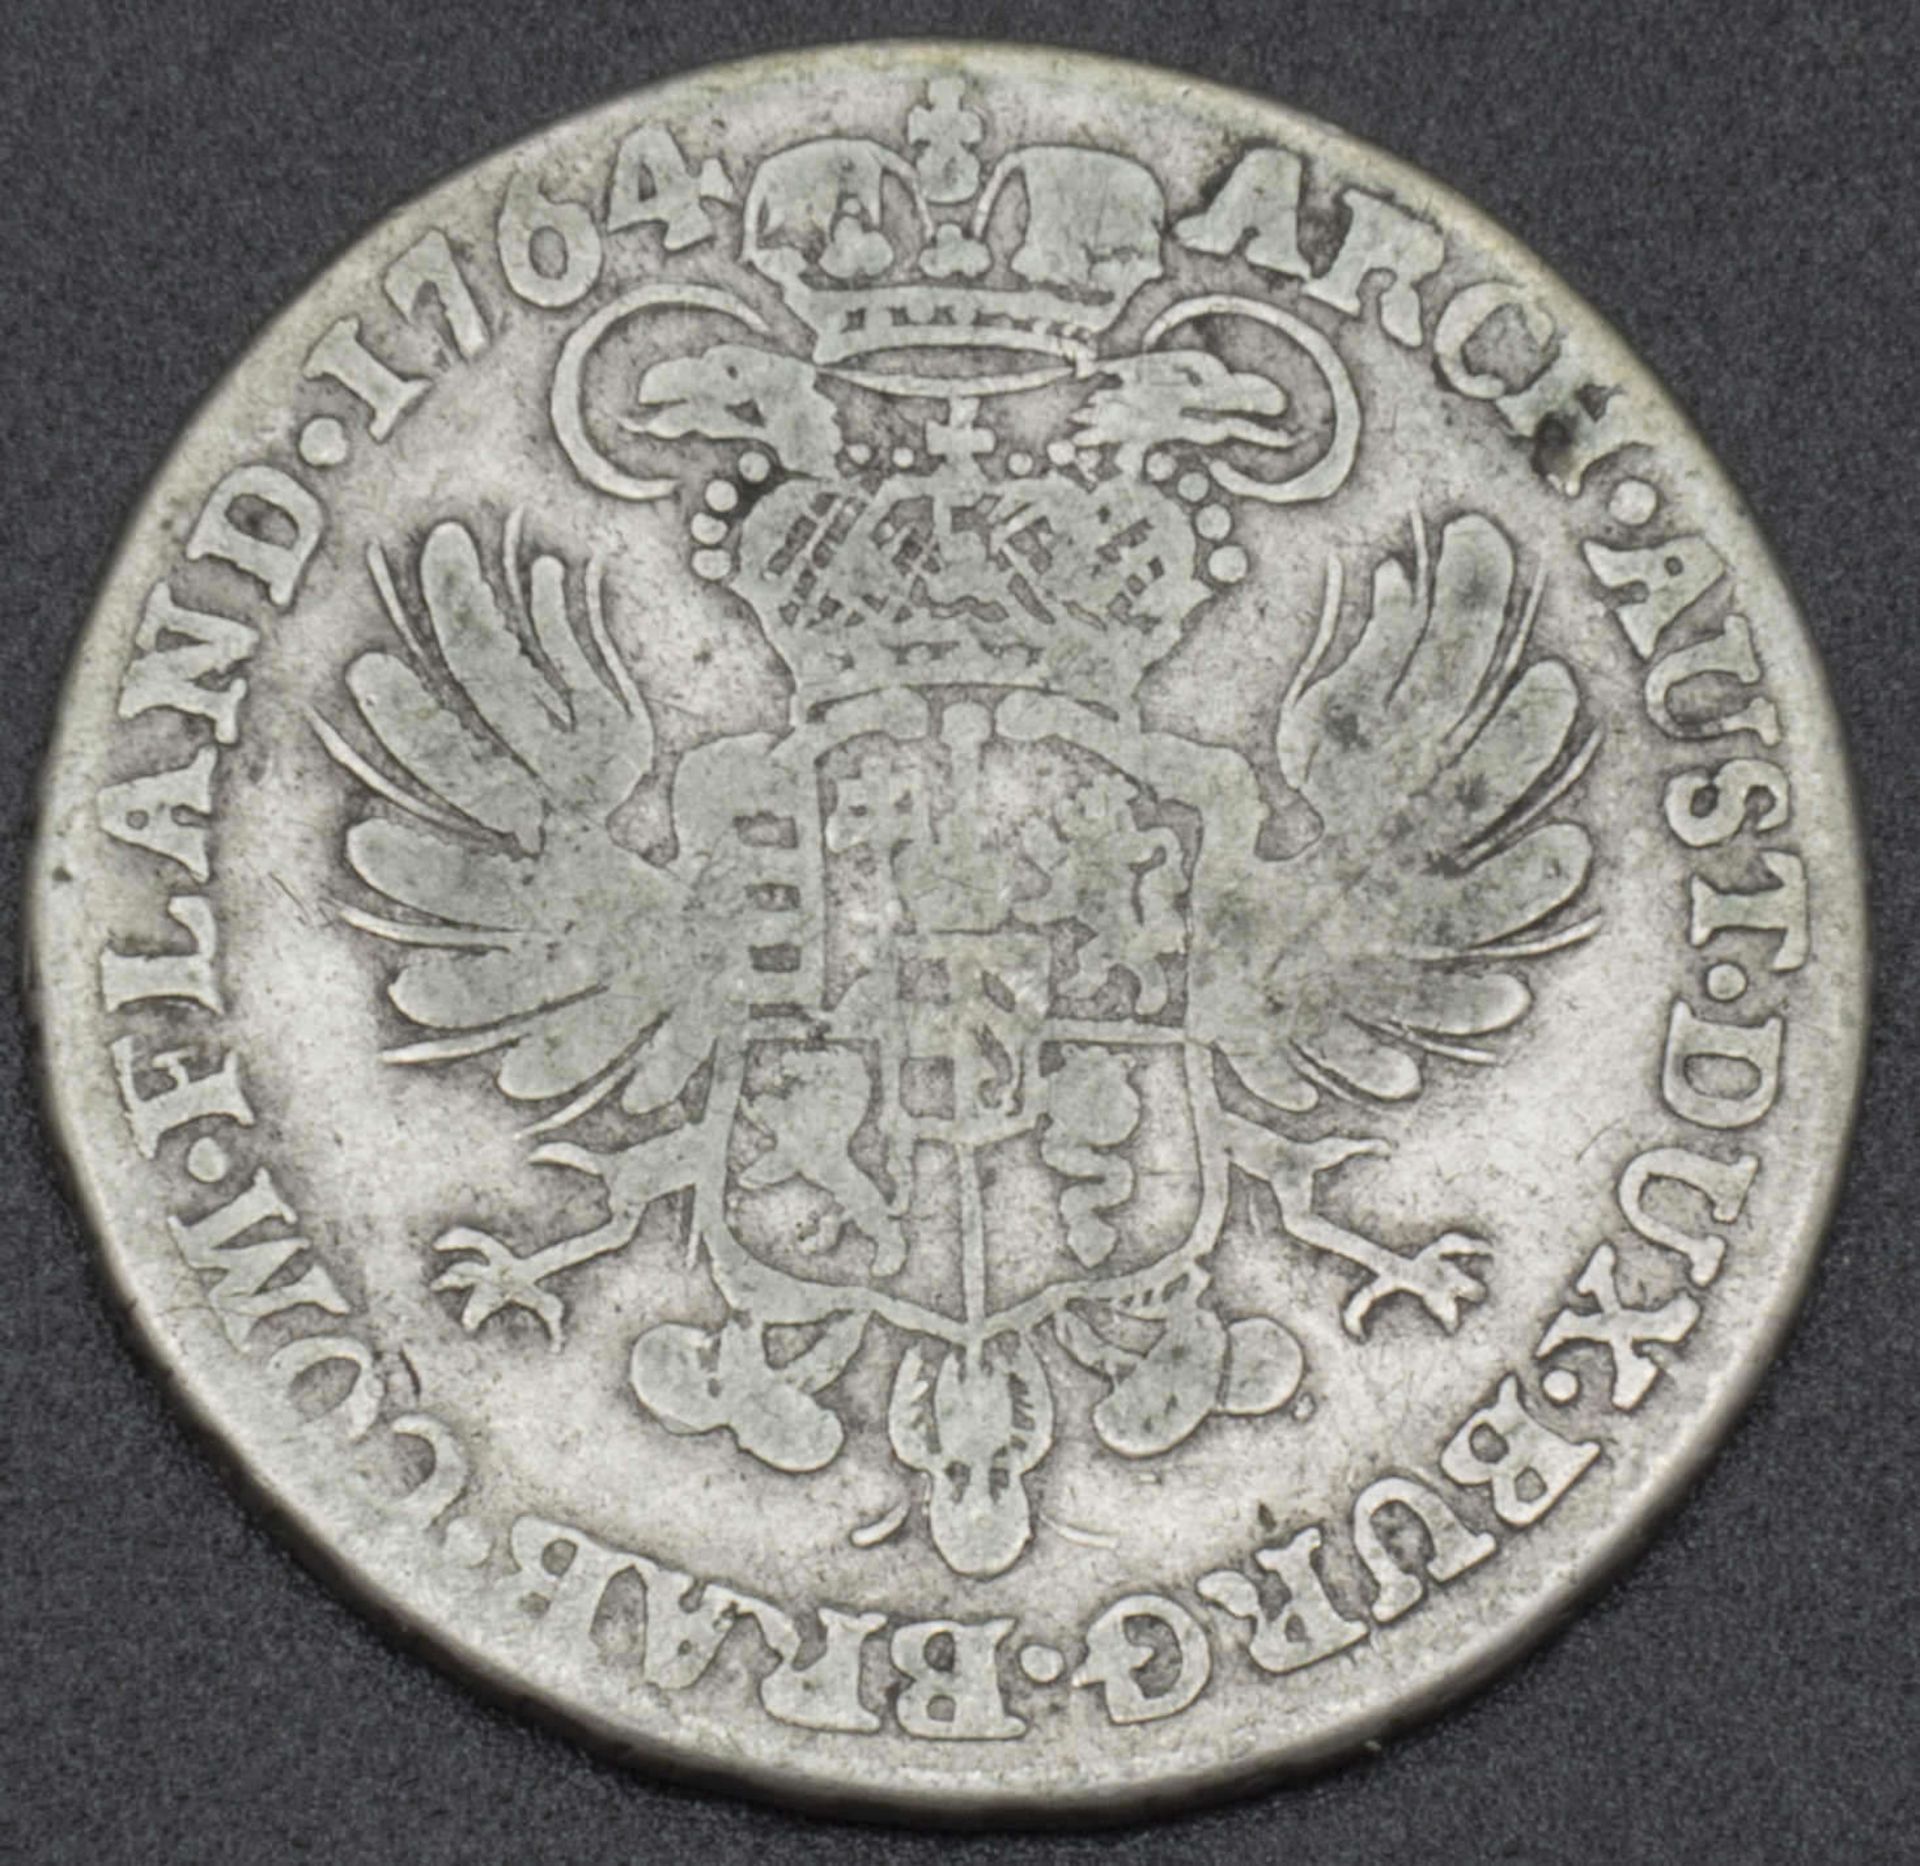 Österreich Taler 1764. Österreich-Niederlande "Maria Theresia" Erhaltung: ss. Katalog Nr. KM - Bild 2 aus 2